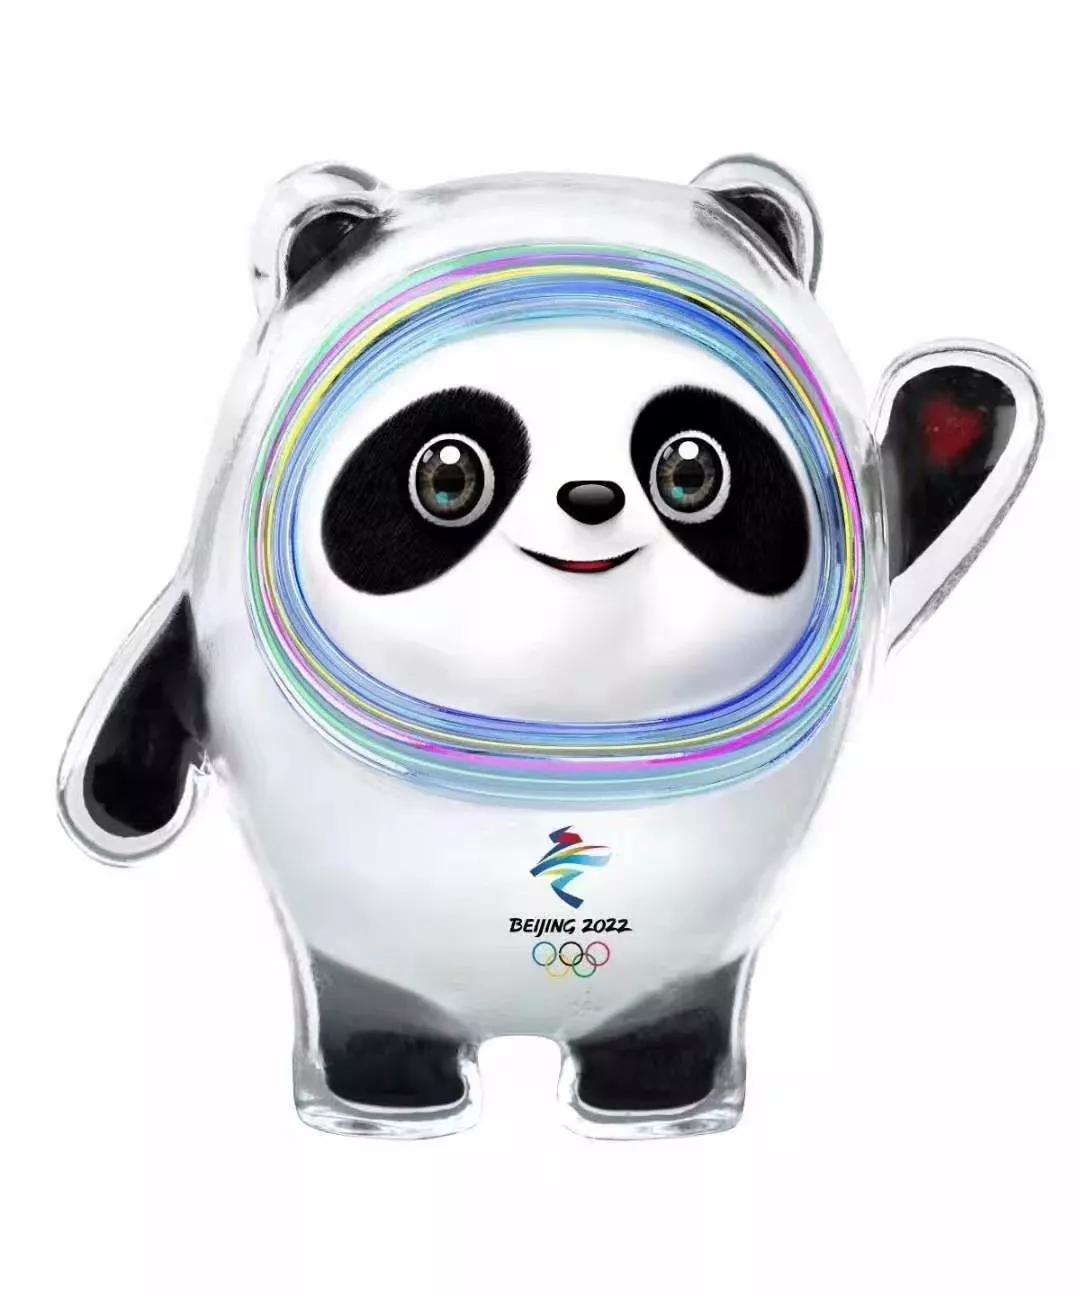 冰墩墩 北京2022年冬季奥运会吉祥物